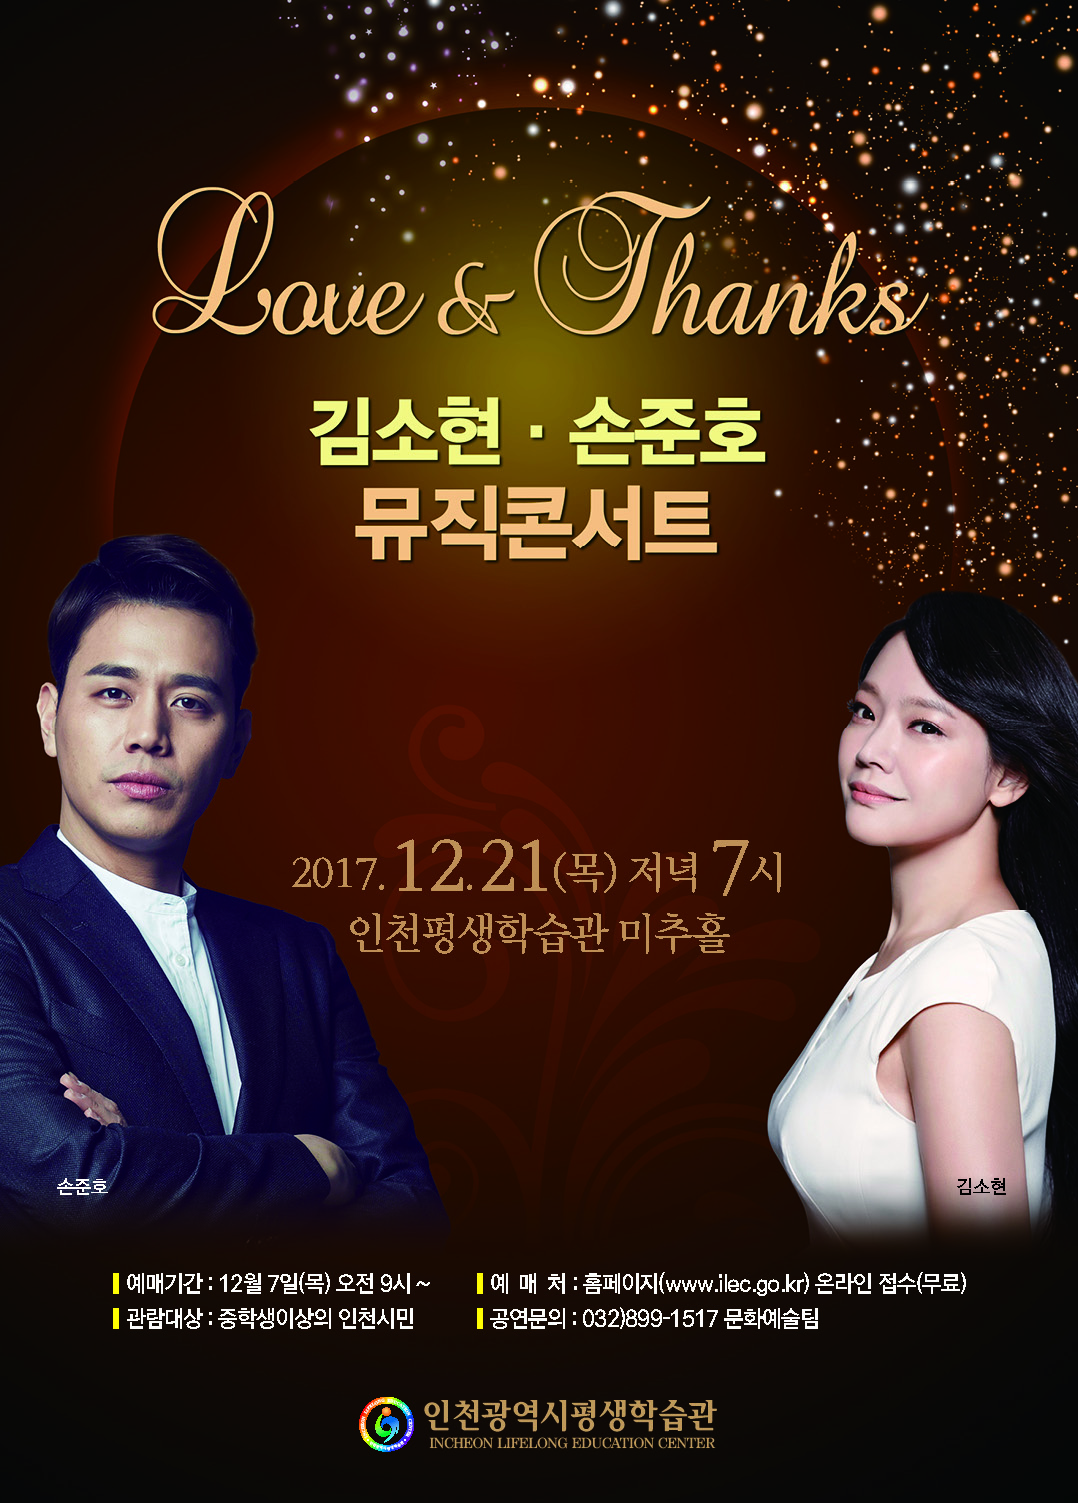 Love & Thanks-김소현 손준호 뮤직콘서트 관련 포스터 - 자세한 내용은 본문참조